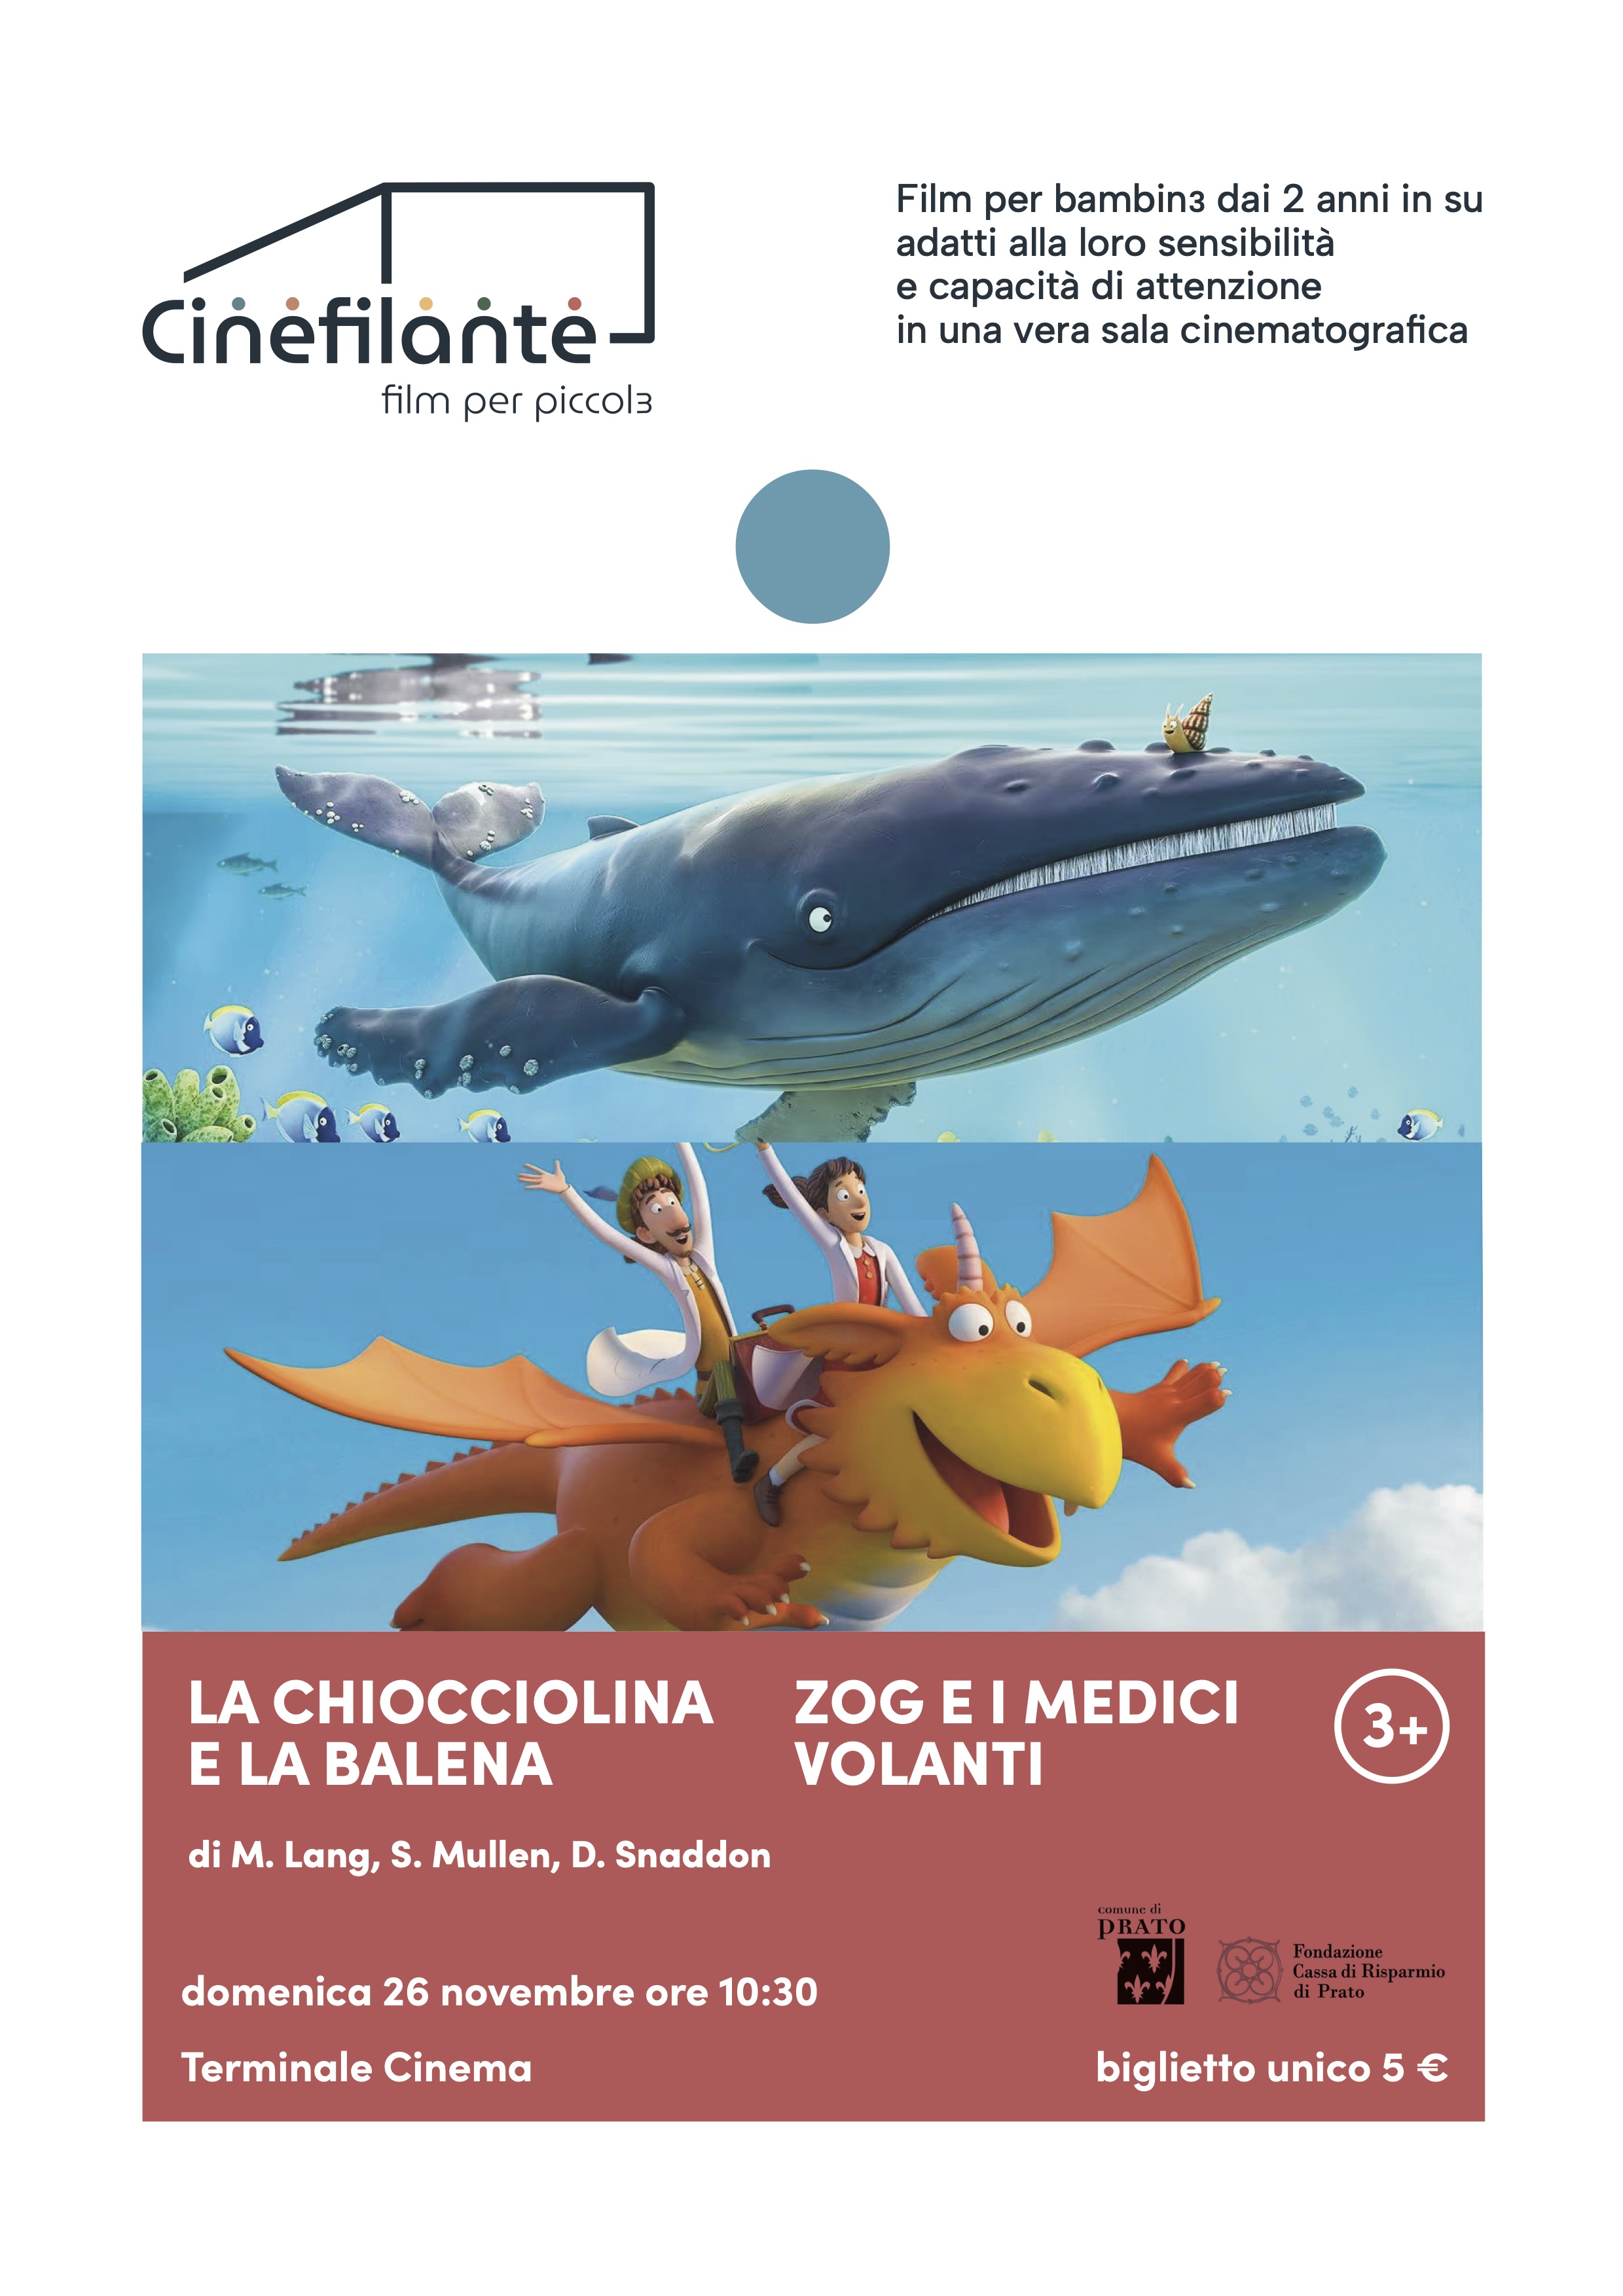 LA CHIOCCIOLINA E LA BALENA / ZOG E I MEDICI VOLANTI - Terminale Cinema -  Casa del Cinema di Prato